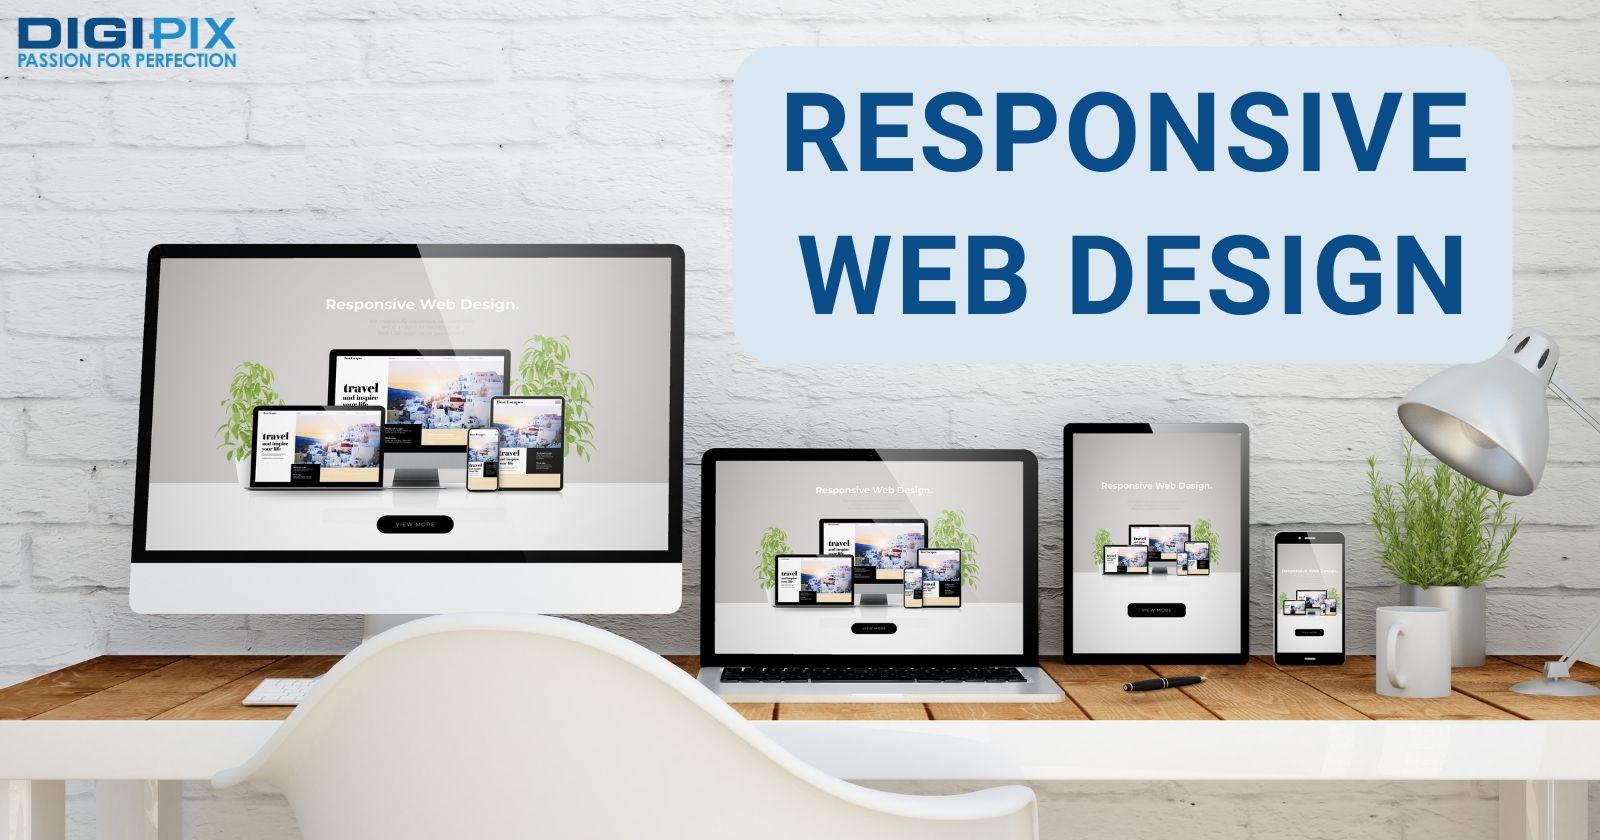 Responsive Web Design layout shows on Desktop, Laptop, Tablet & Mobile Screens